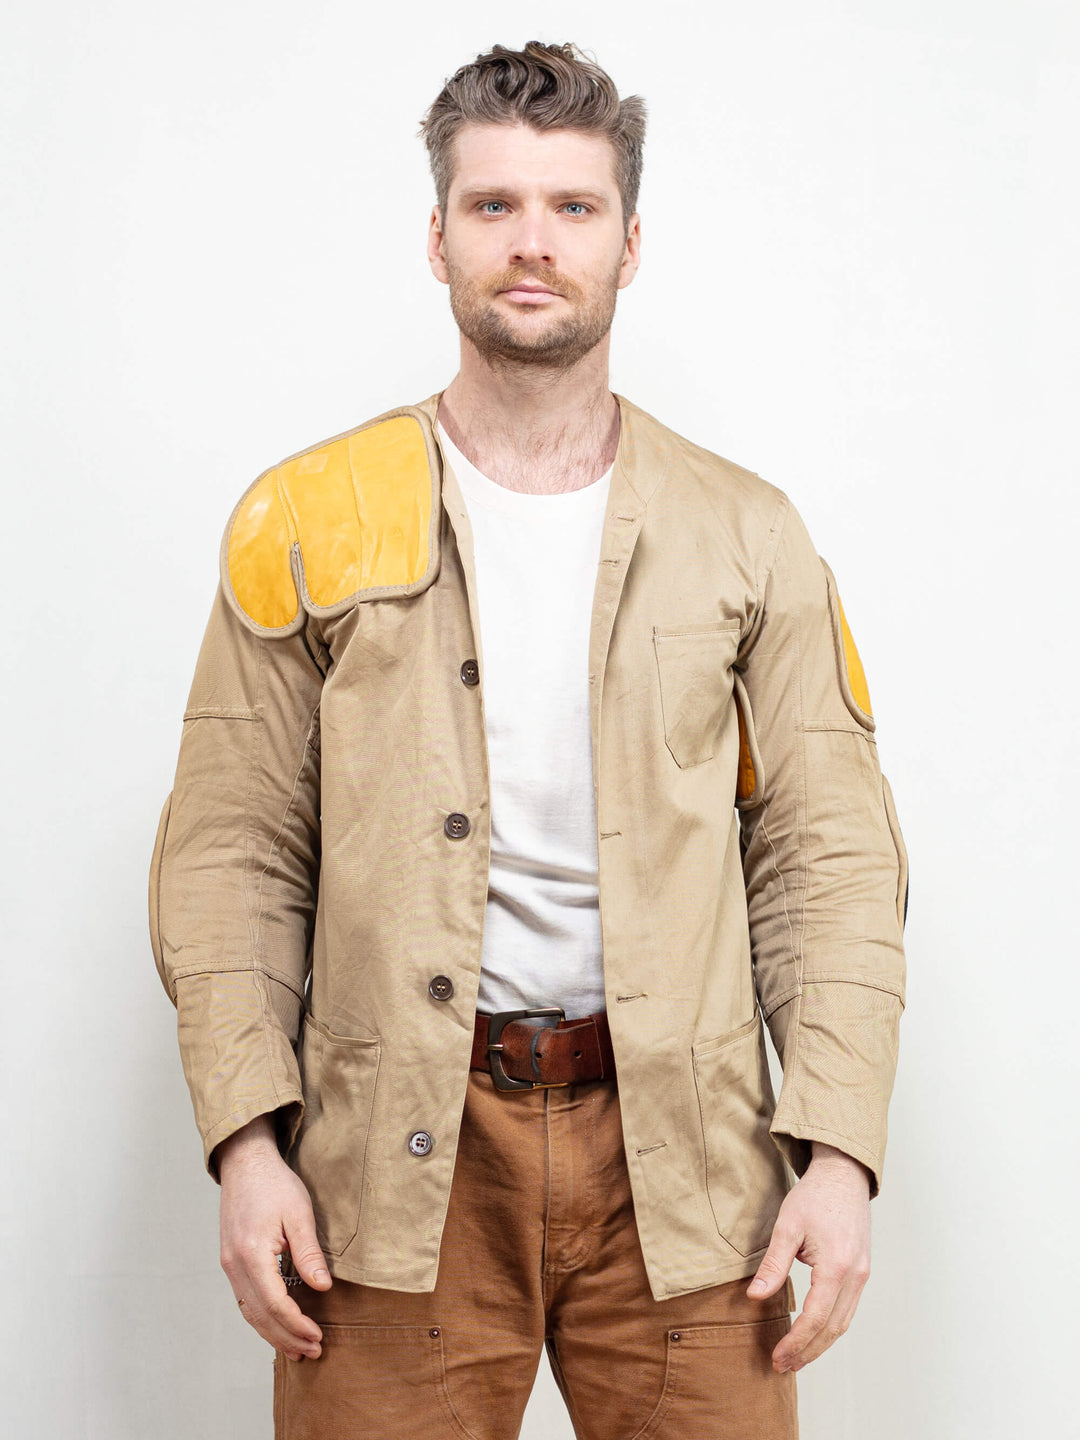 Vintage 60's America's Finest Clothng Hunting Jacket